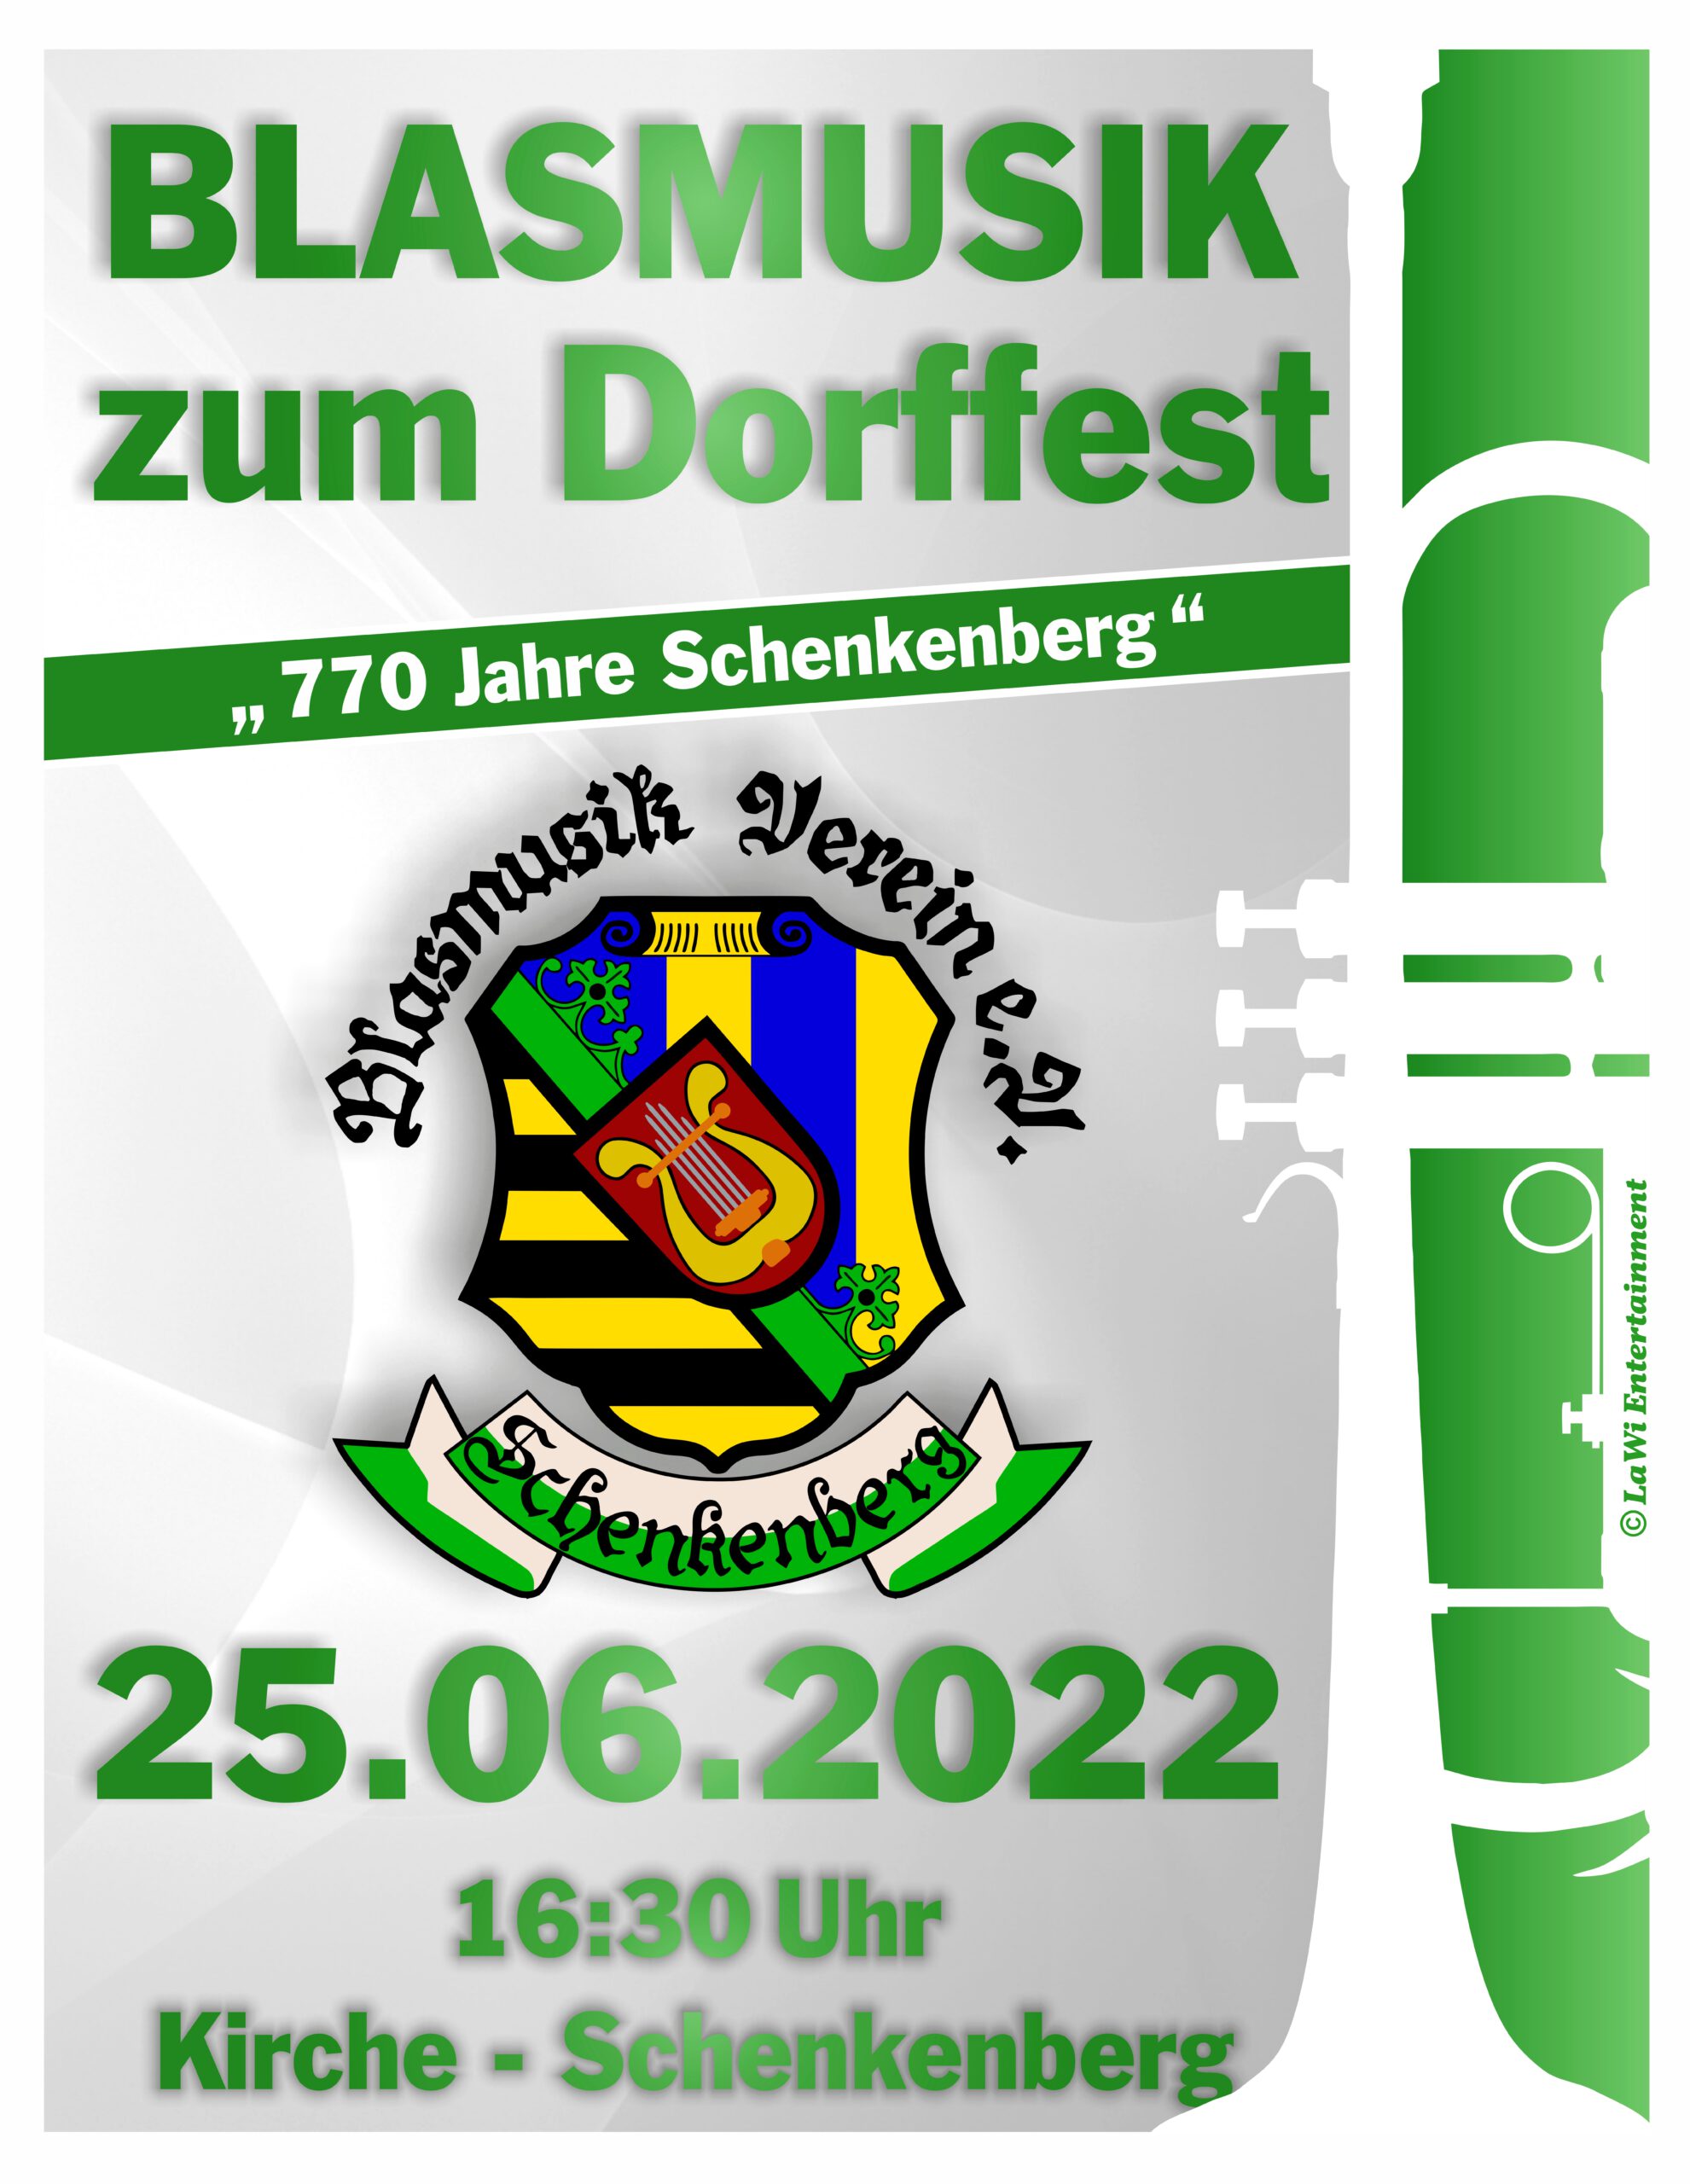 Blasmusik zum Dorffest - Blasmusikverein Schenkenberg e.V. 2022 - Blasmusikverein Schenkenberg e.V.